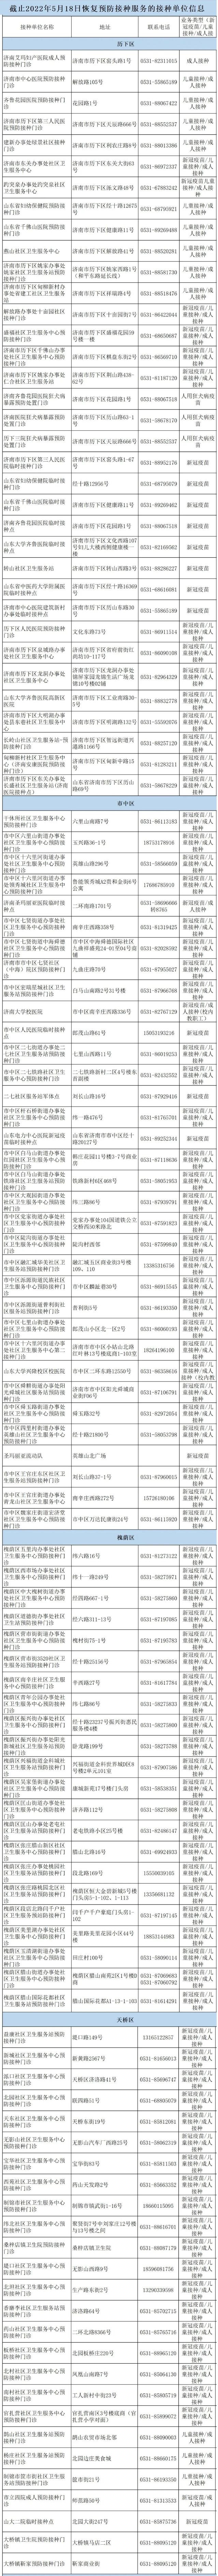 济南公布已恢复预防接种服务单位名单